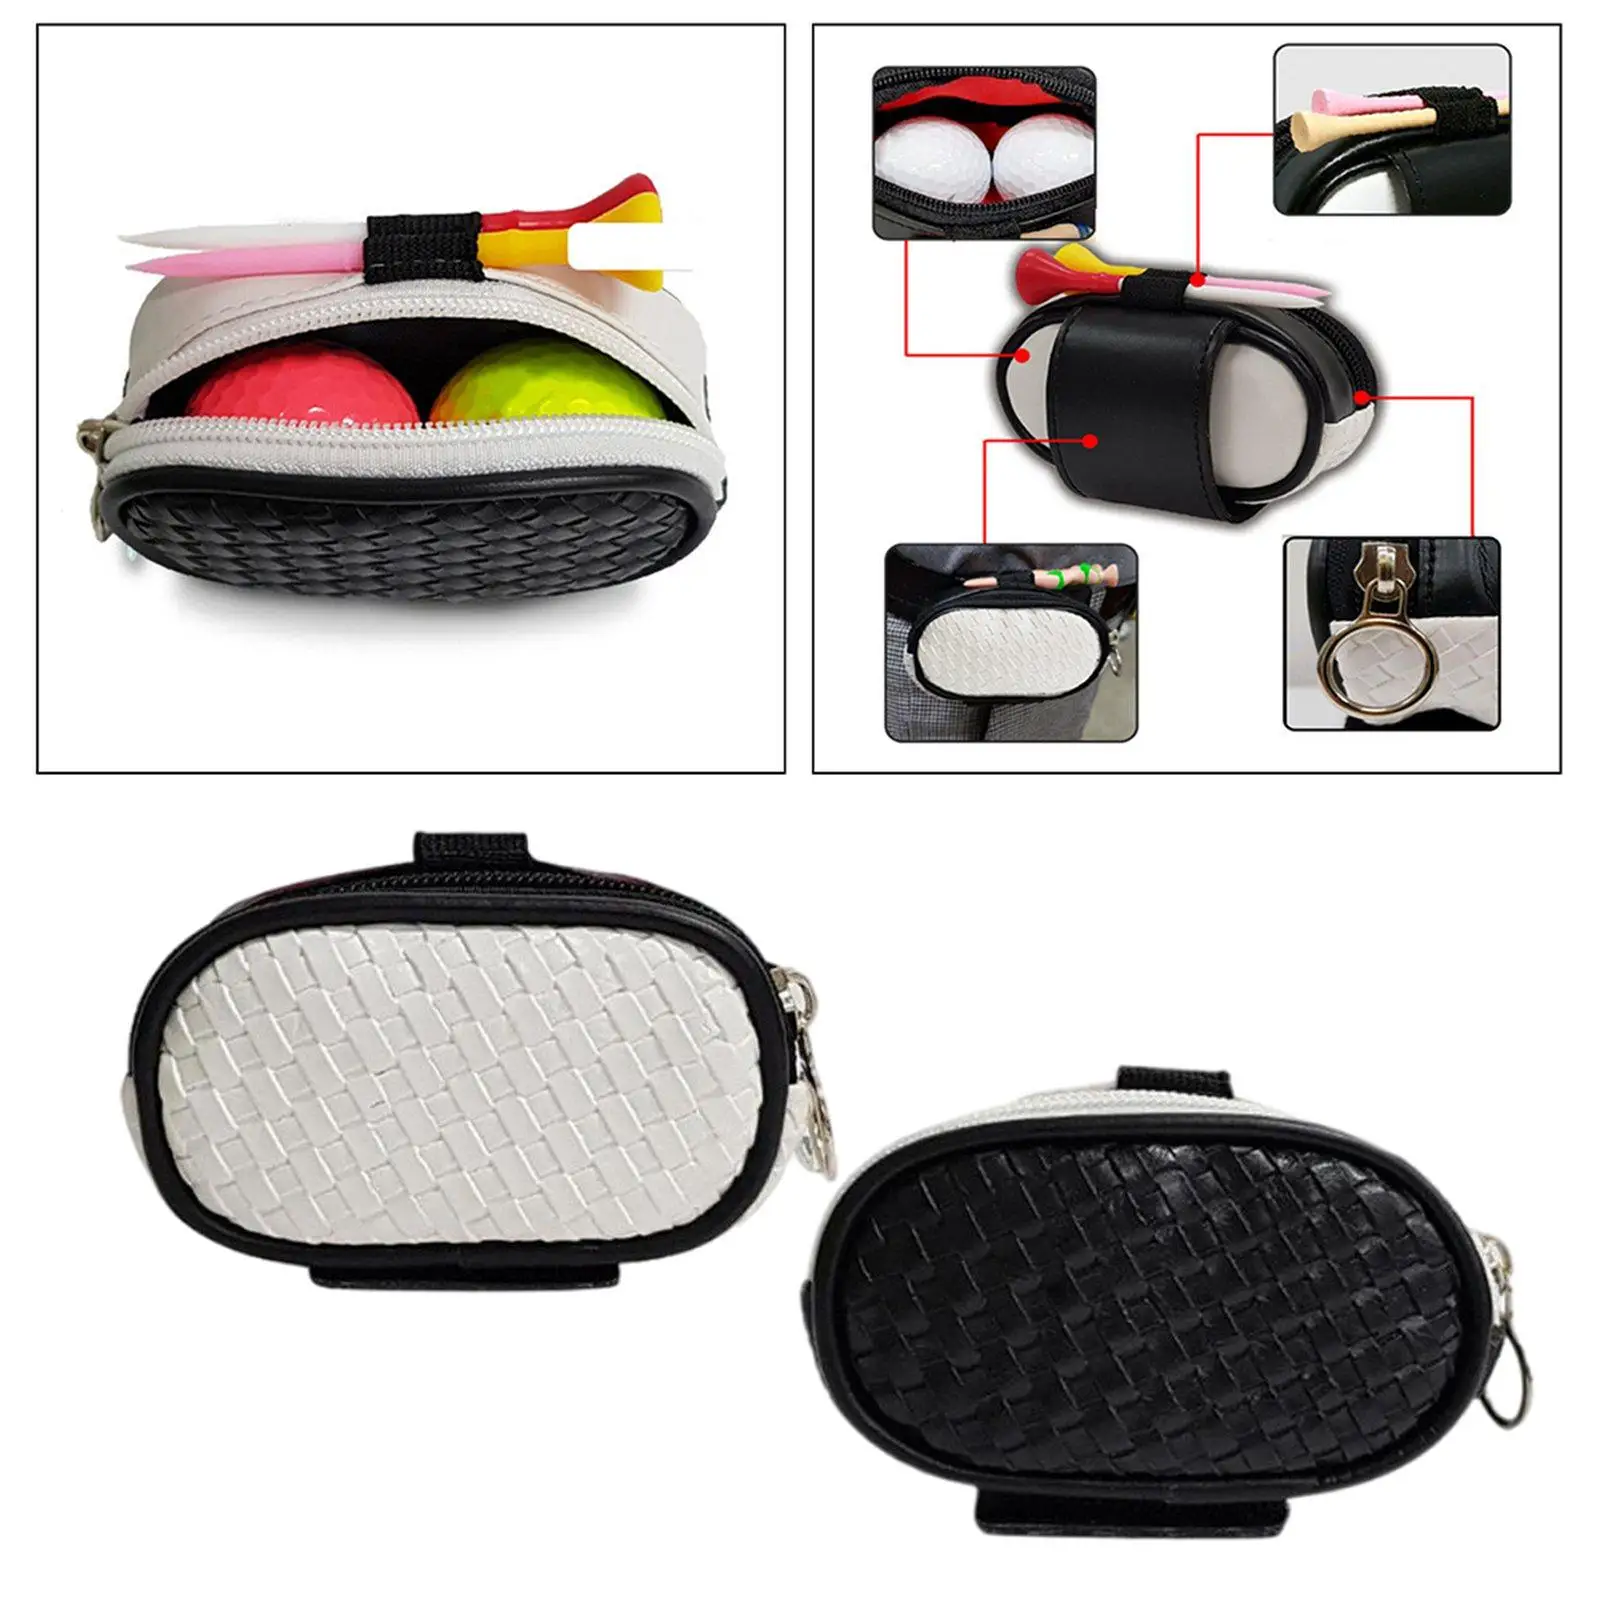 2pcs Small Golf Ball Bag  Case Outdoor Training Supplies for Men/Women